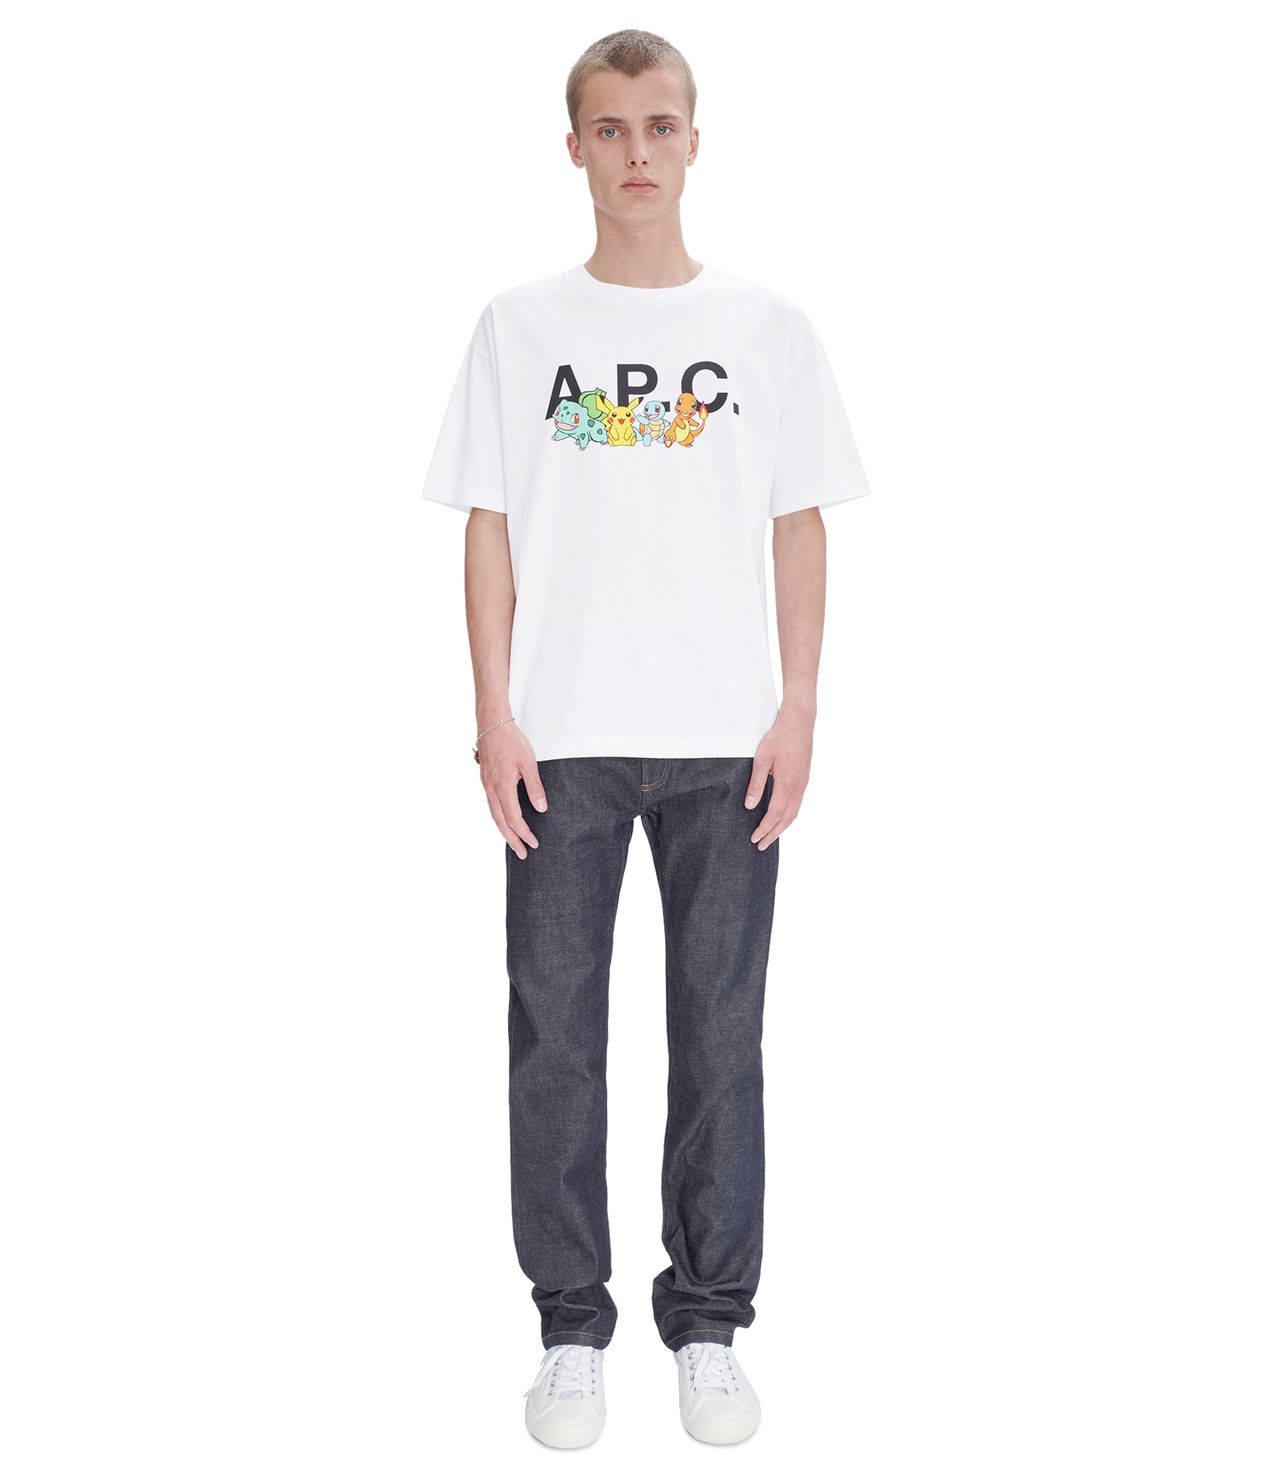 Pokémon The Crew H T-shirt WHITE APC